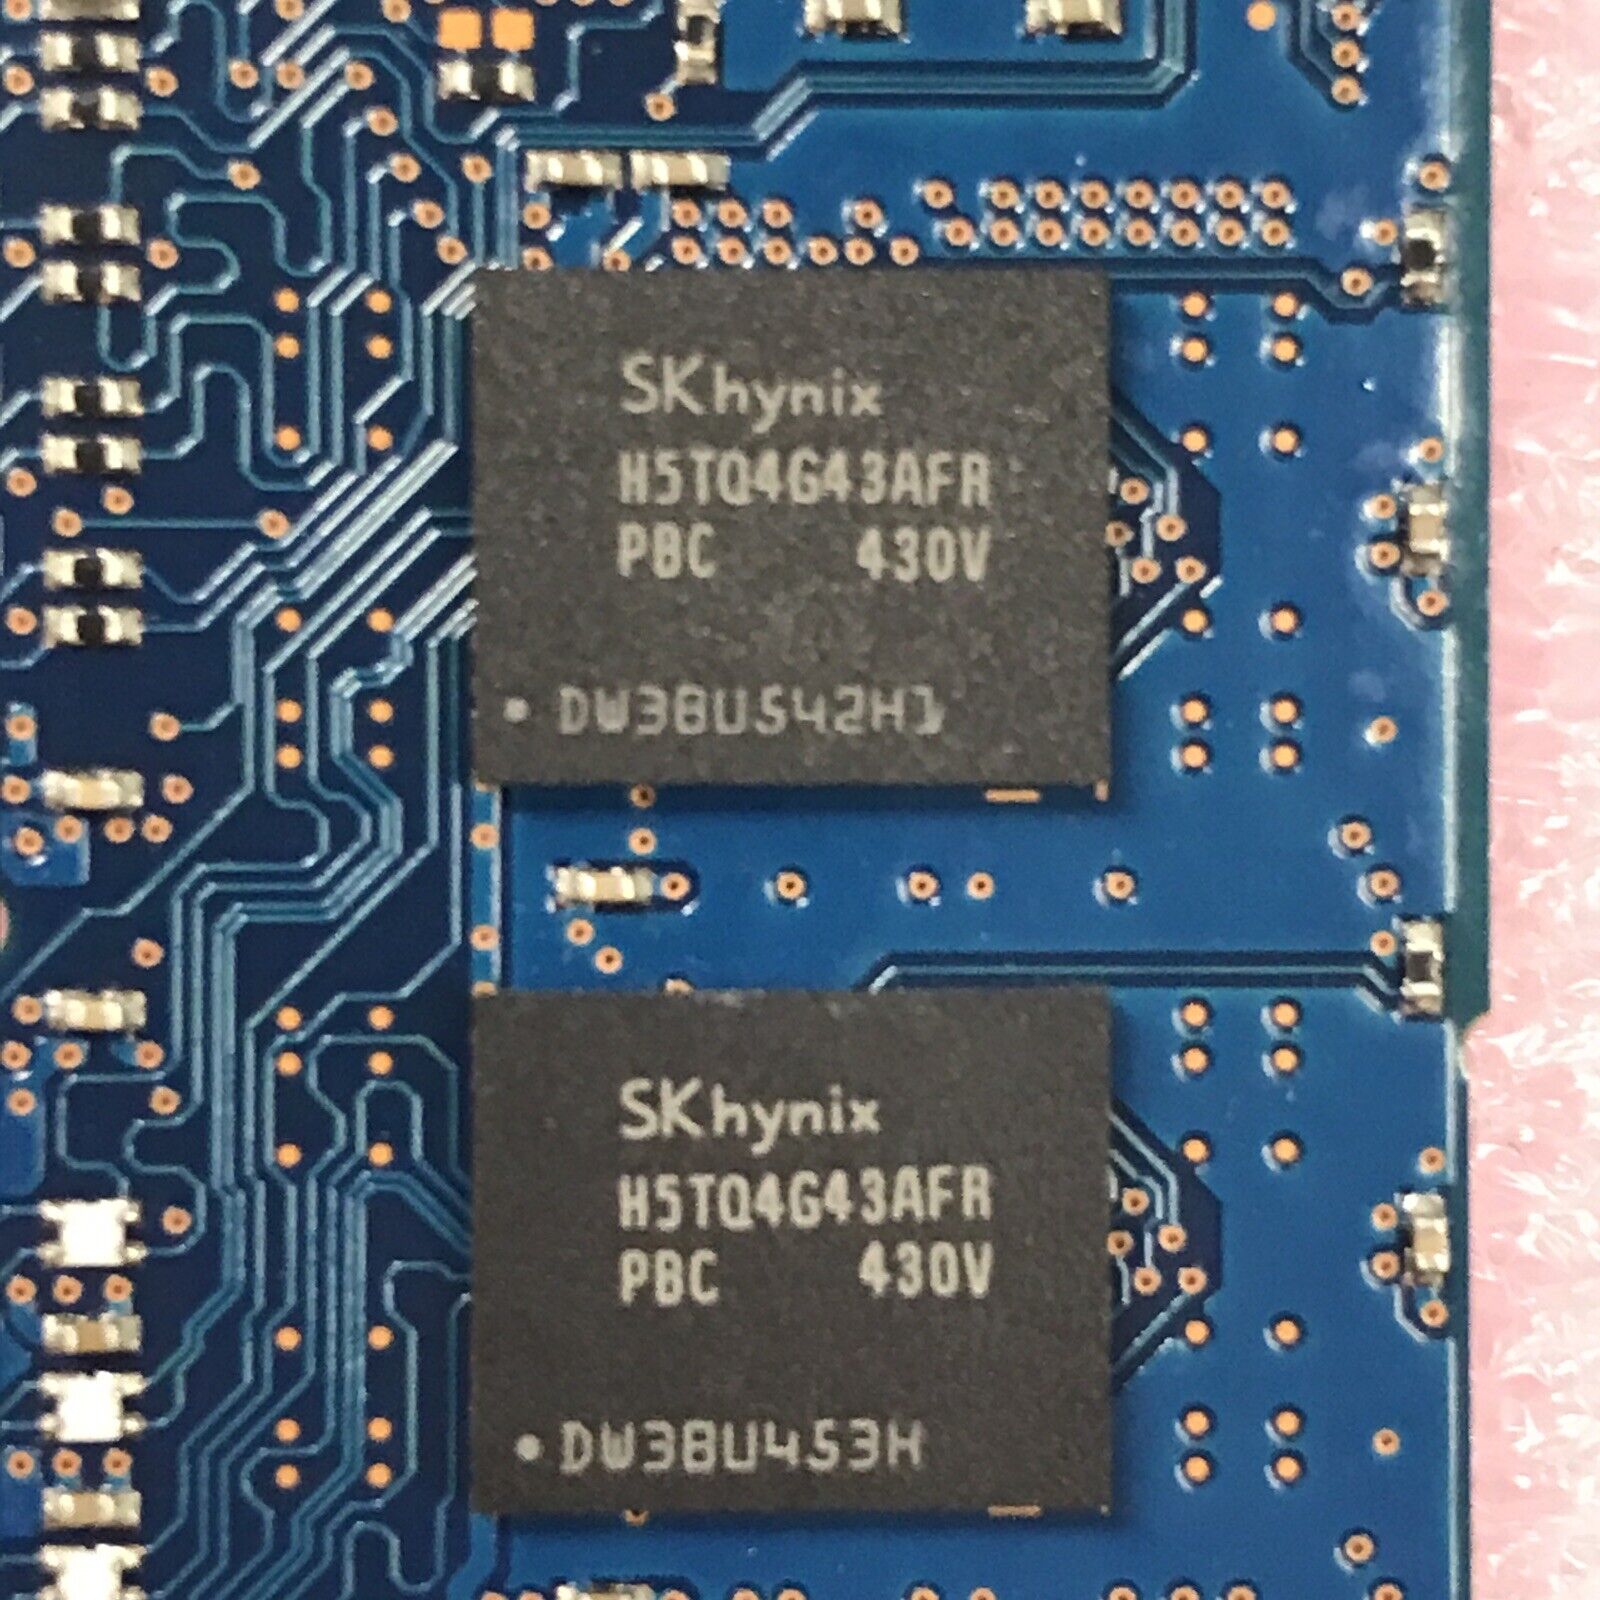 SK Hynix 24GB 1Rx4 PC3-12800R-11-13-C2 RAM HMT41GR7AAFR4C